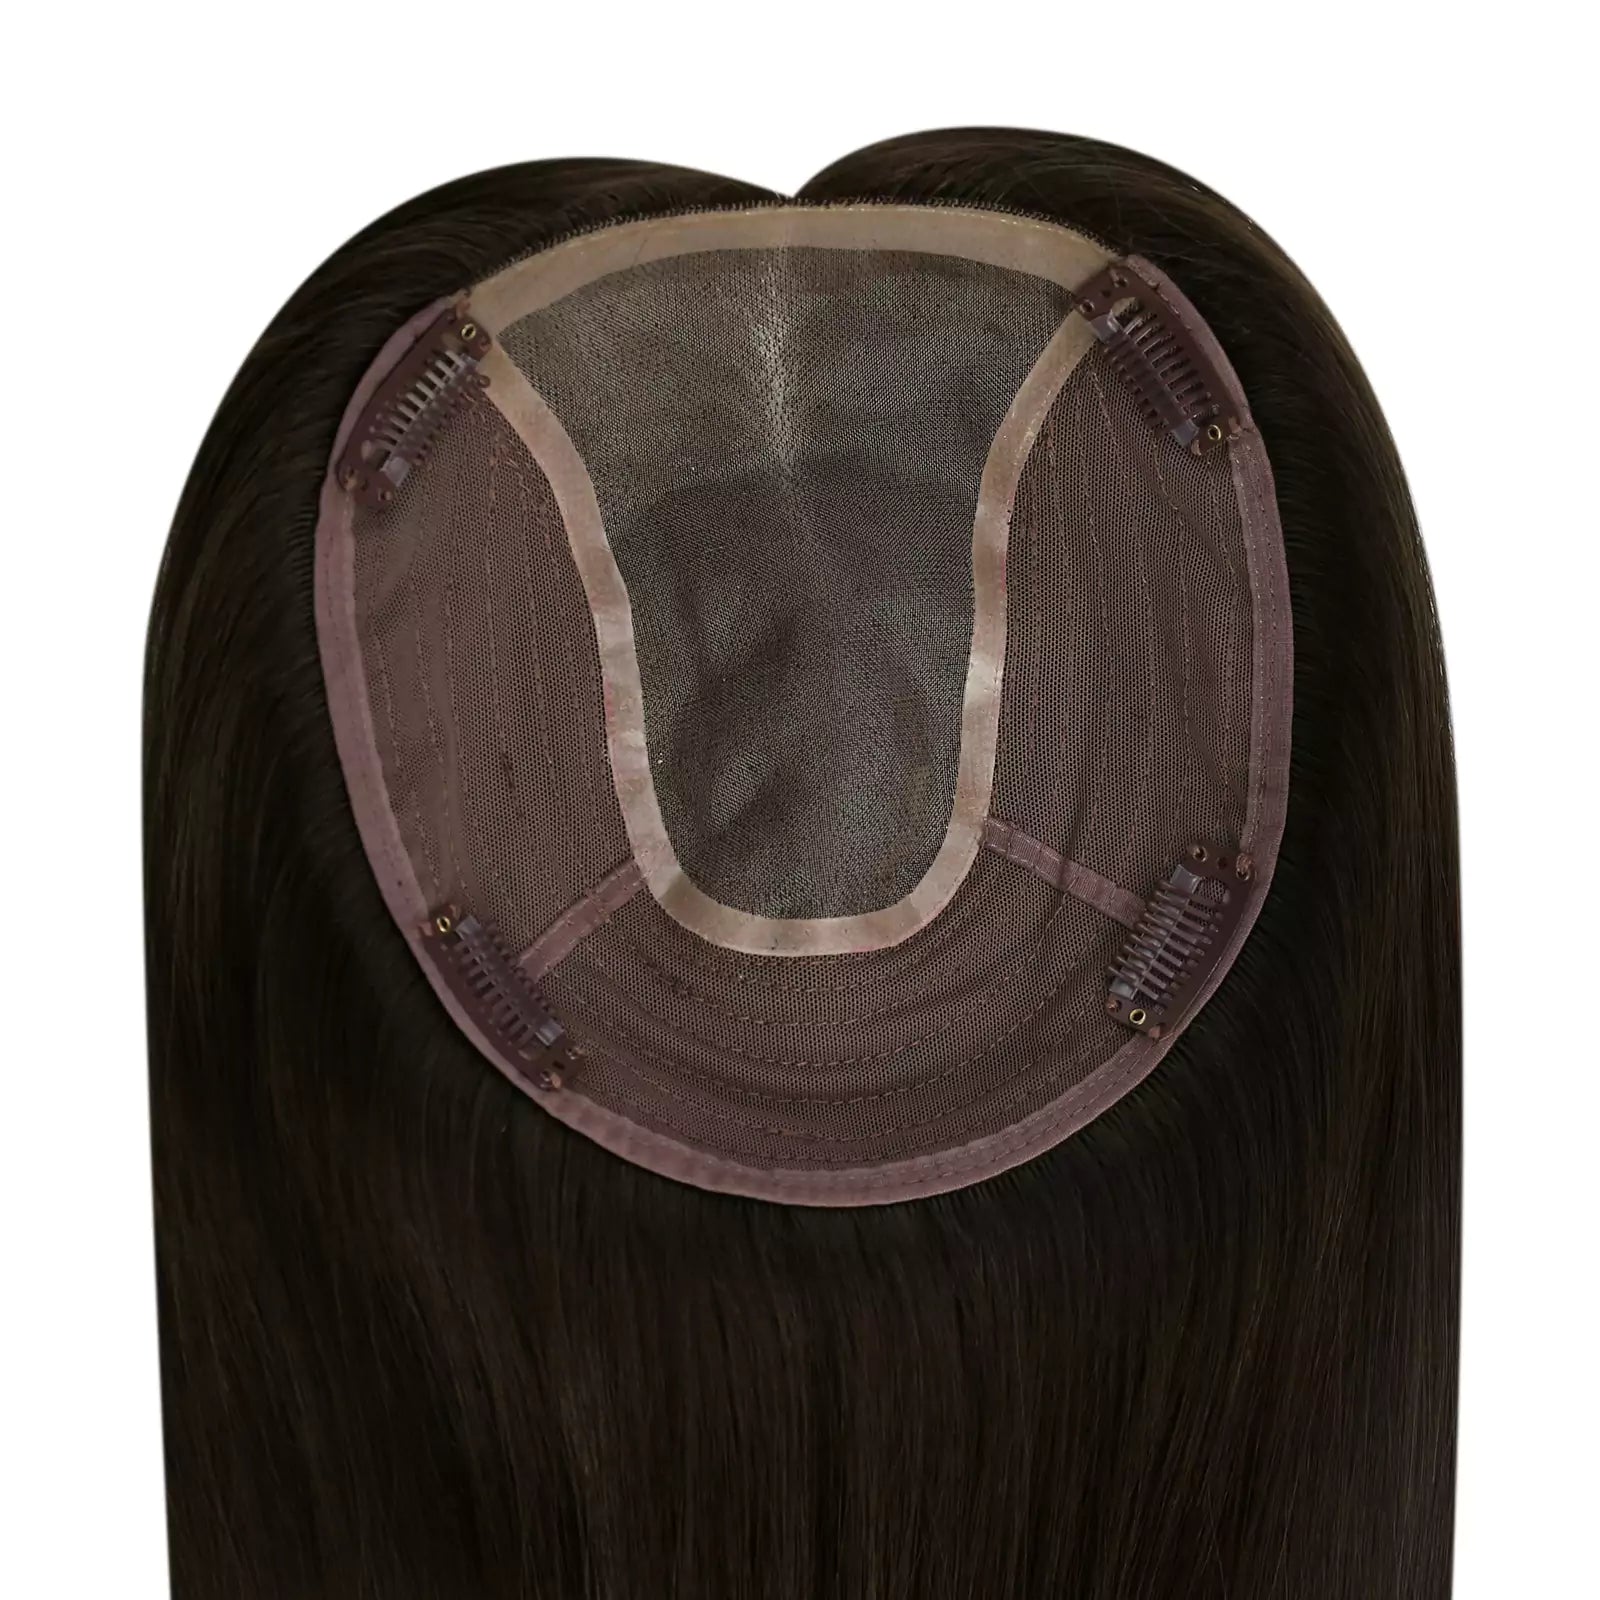 Darkest Brown Virgin Hair Topper Real Human Hair For Thinning Hair 2